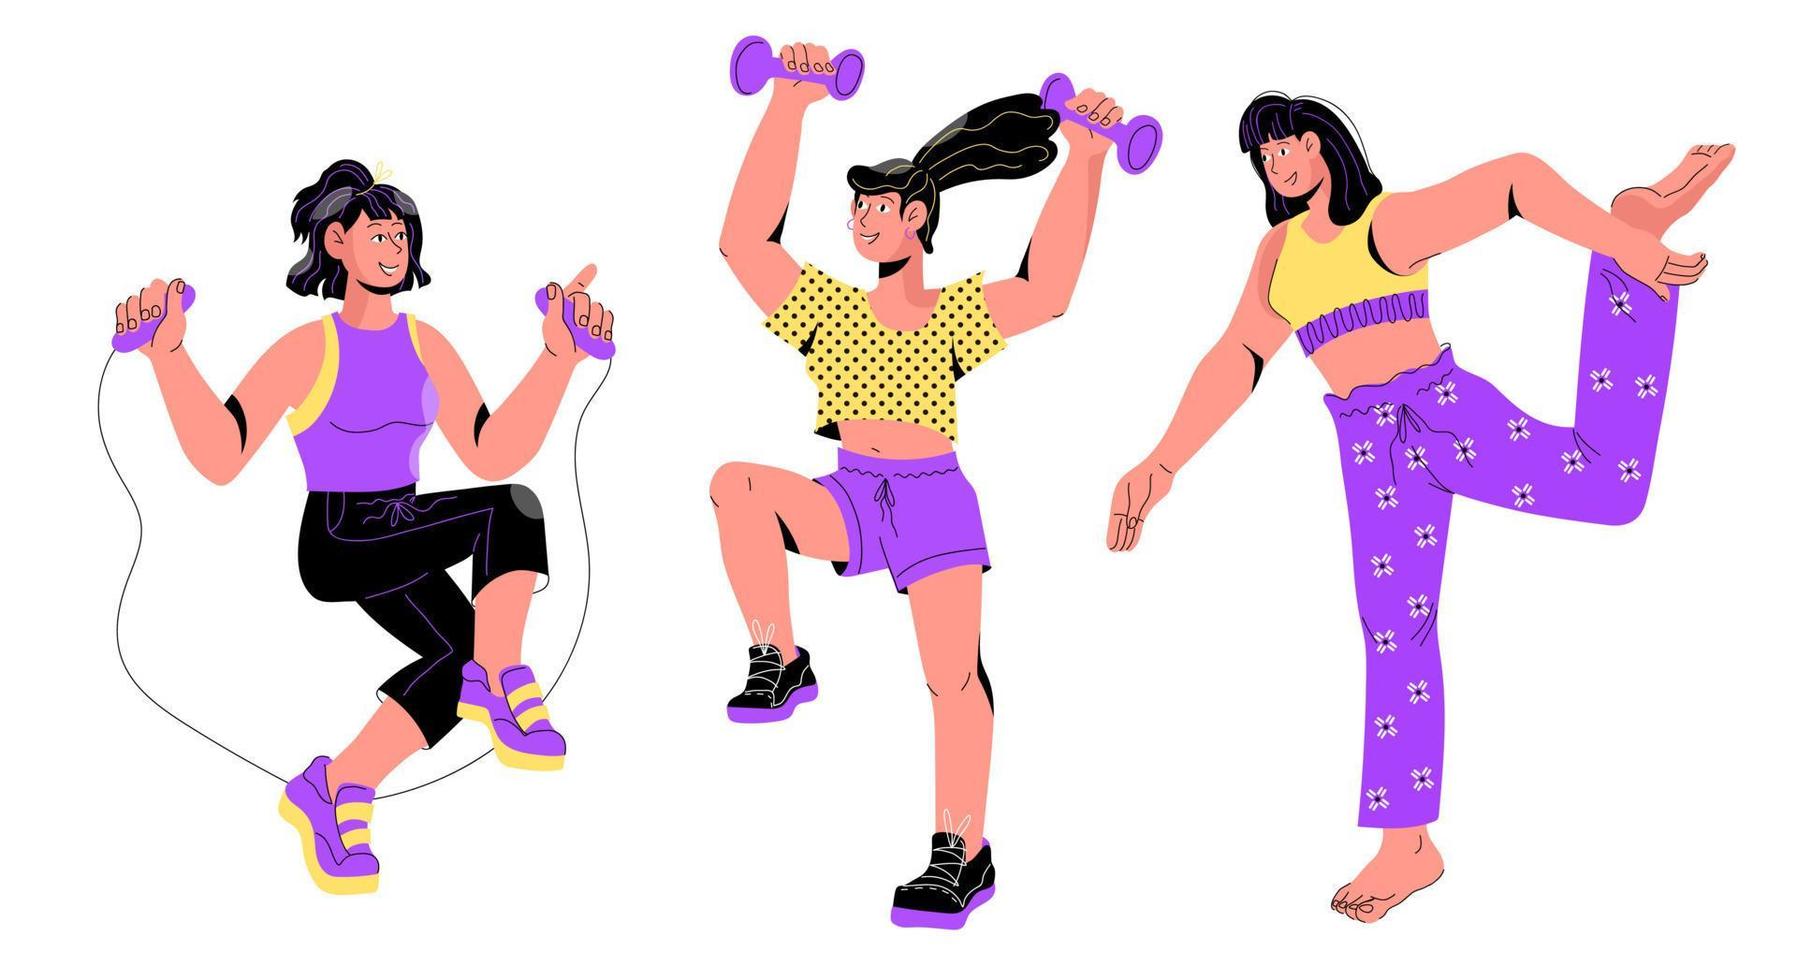 vrouwen die zich bezighouden met verschillende sporten - yoga-oefeningen, gym en cardio workouts, cartoon platte vectorillustratie geïsoleerd op een witte achtergrond. gezonde levensstijl en fitness concept. vector